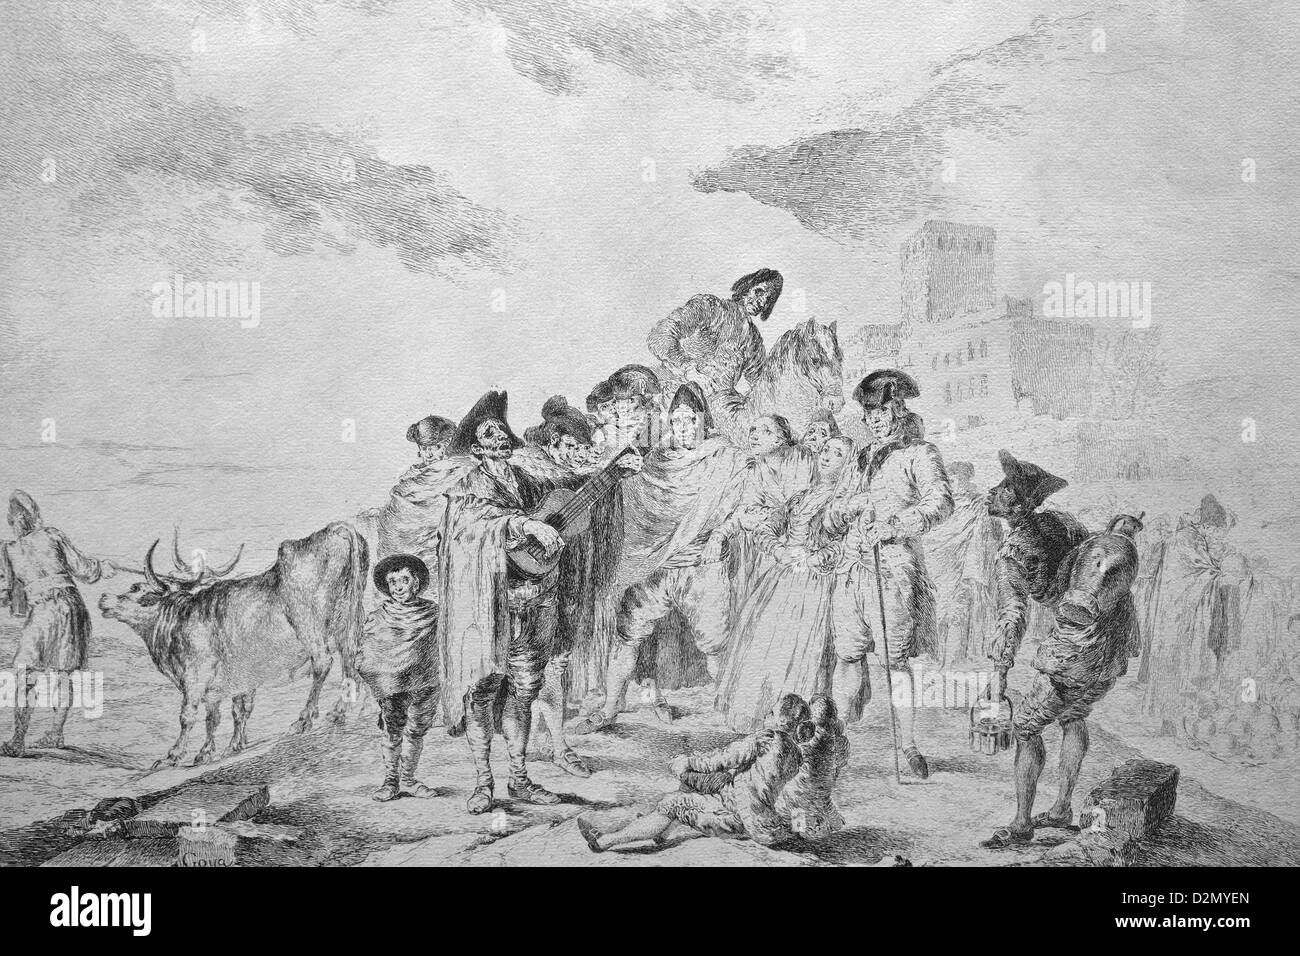 Le guitariste aveugle de Francisco de Goya, 1778, British Museum, Londres, Angleterre, RU, FR, Îles britanniques Banque D'Images